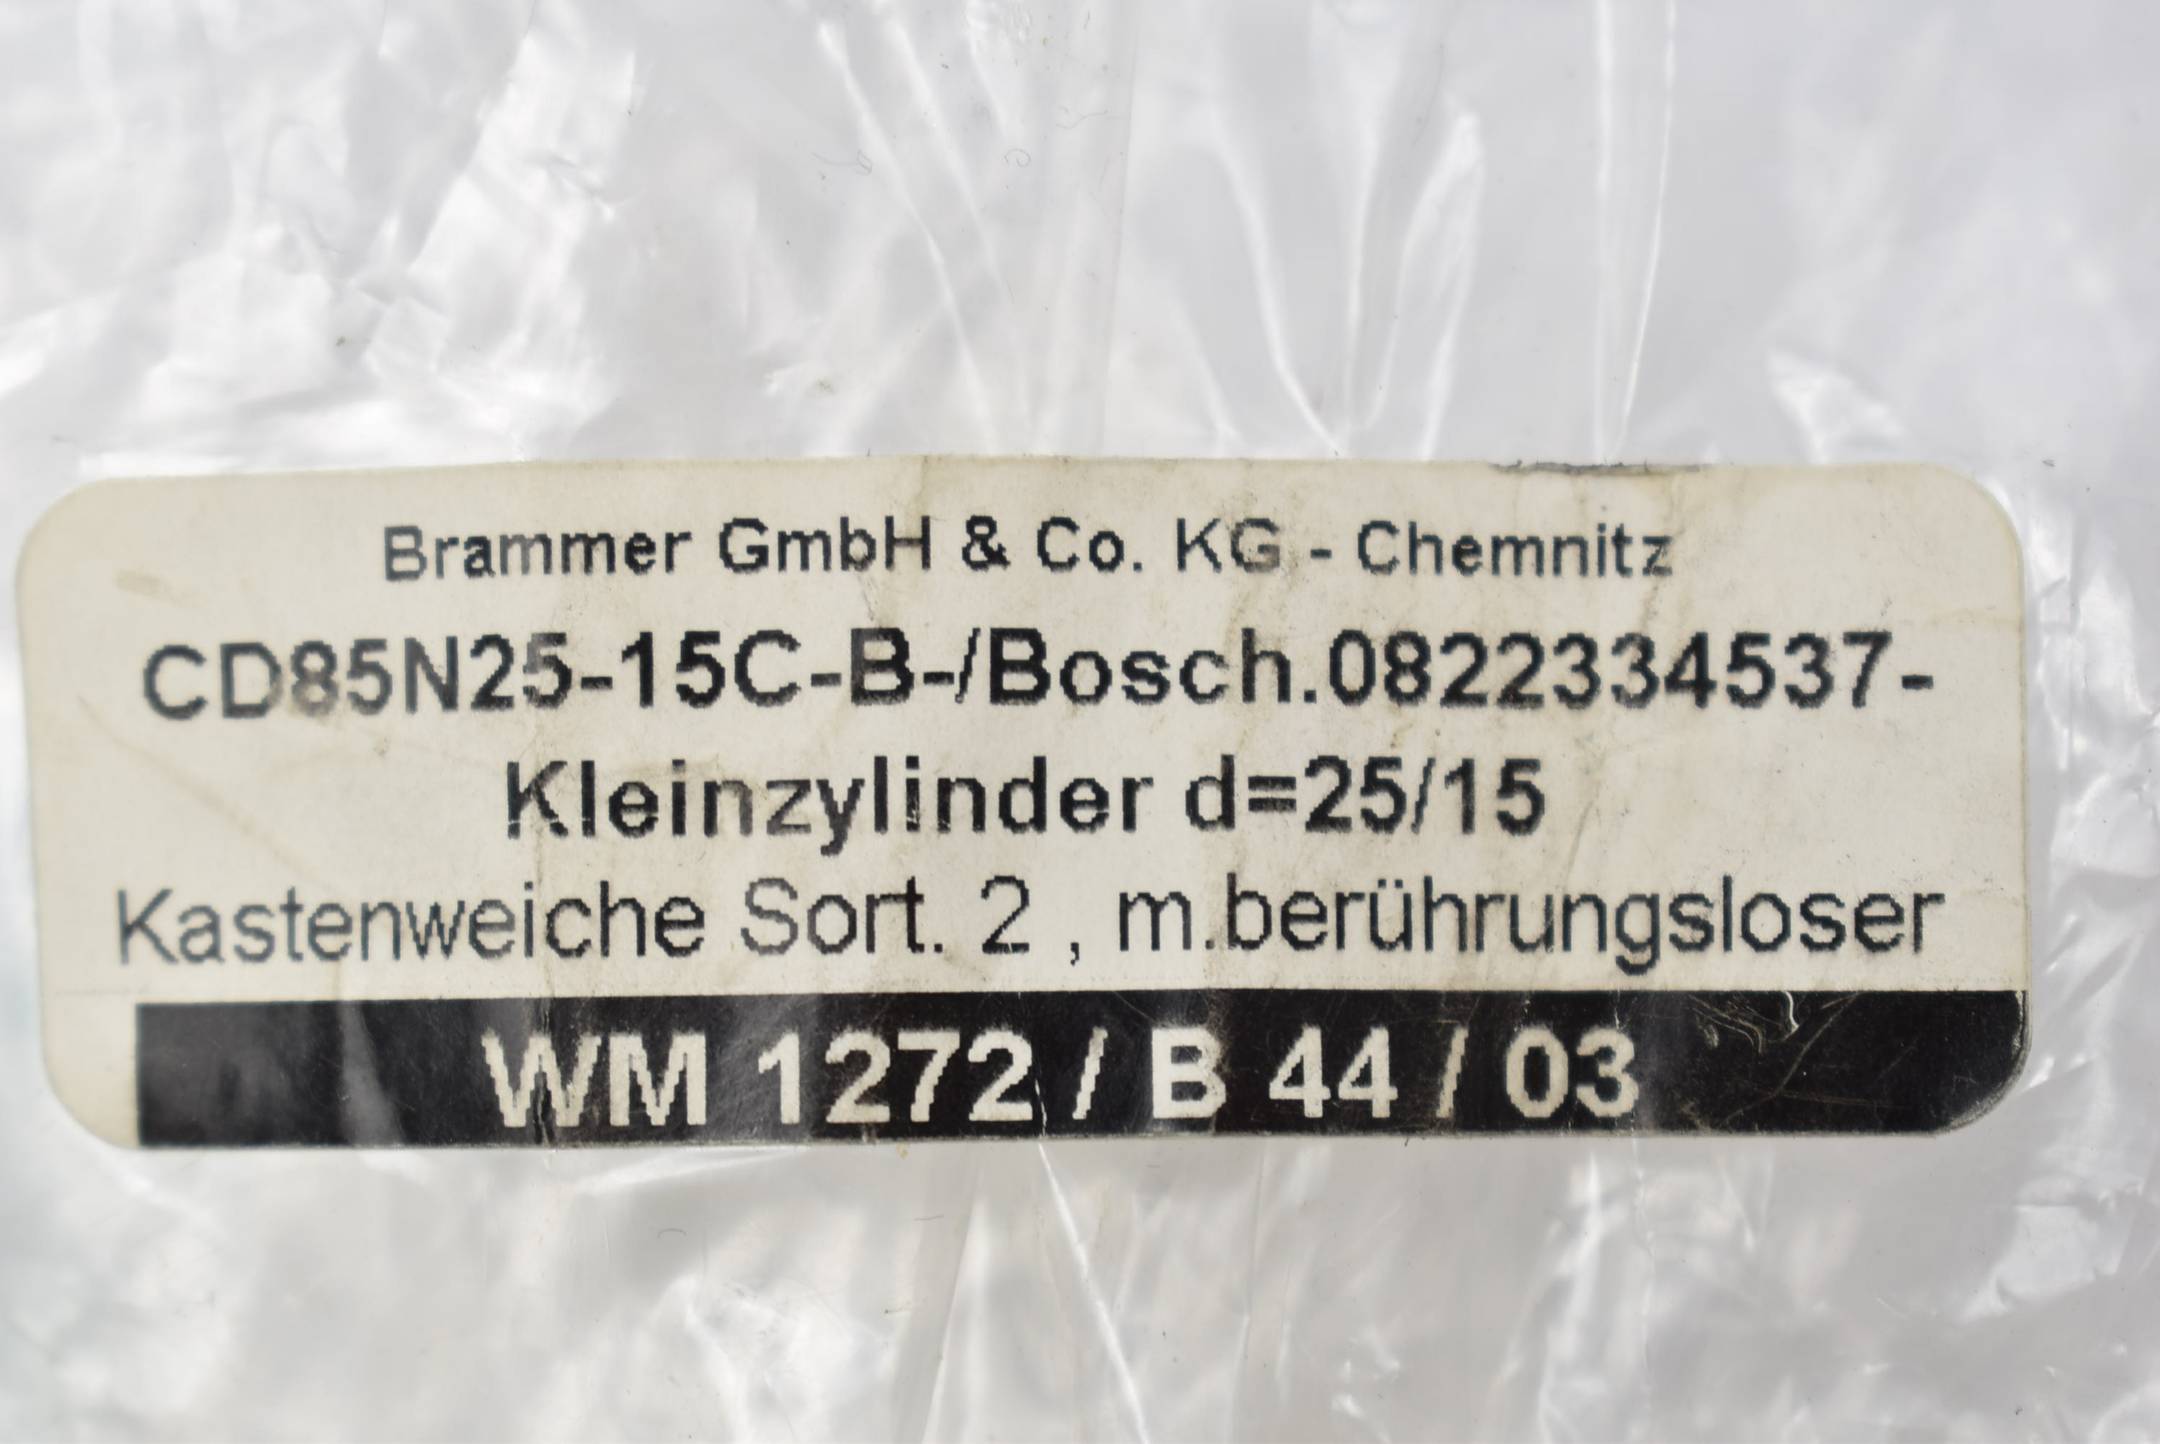 Bosch SMC Kleinzylinder 1.0MPa CD85N25-15C-B ( 0822334537 )